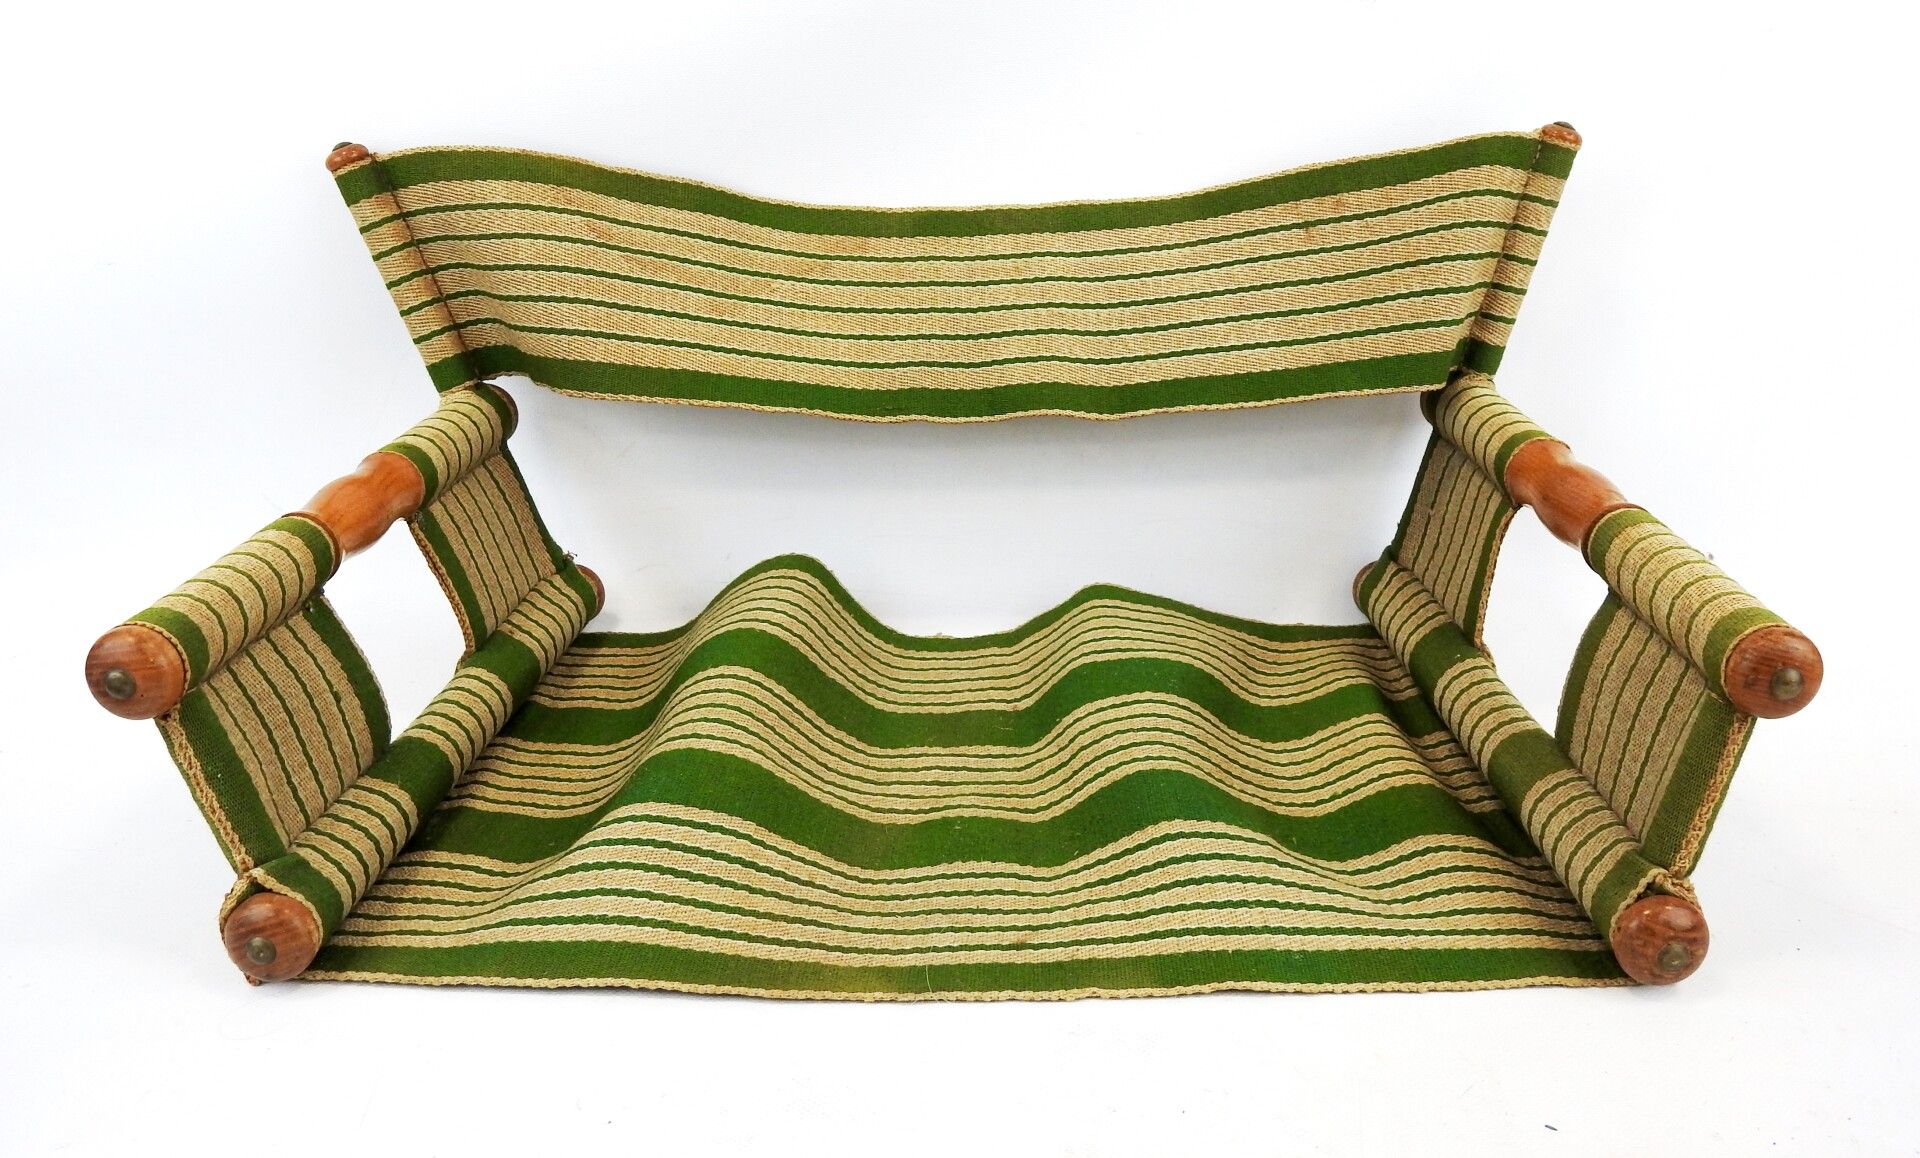 Null 天然木材和绿色条纹帆布的运输座椅。

27 x 56 x 37厘米